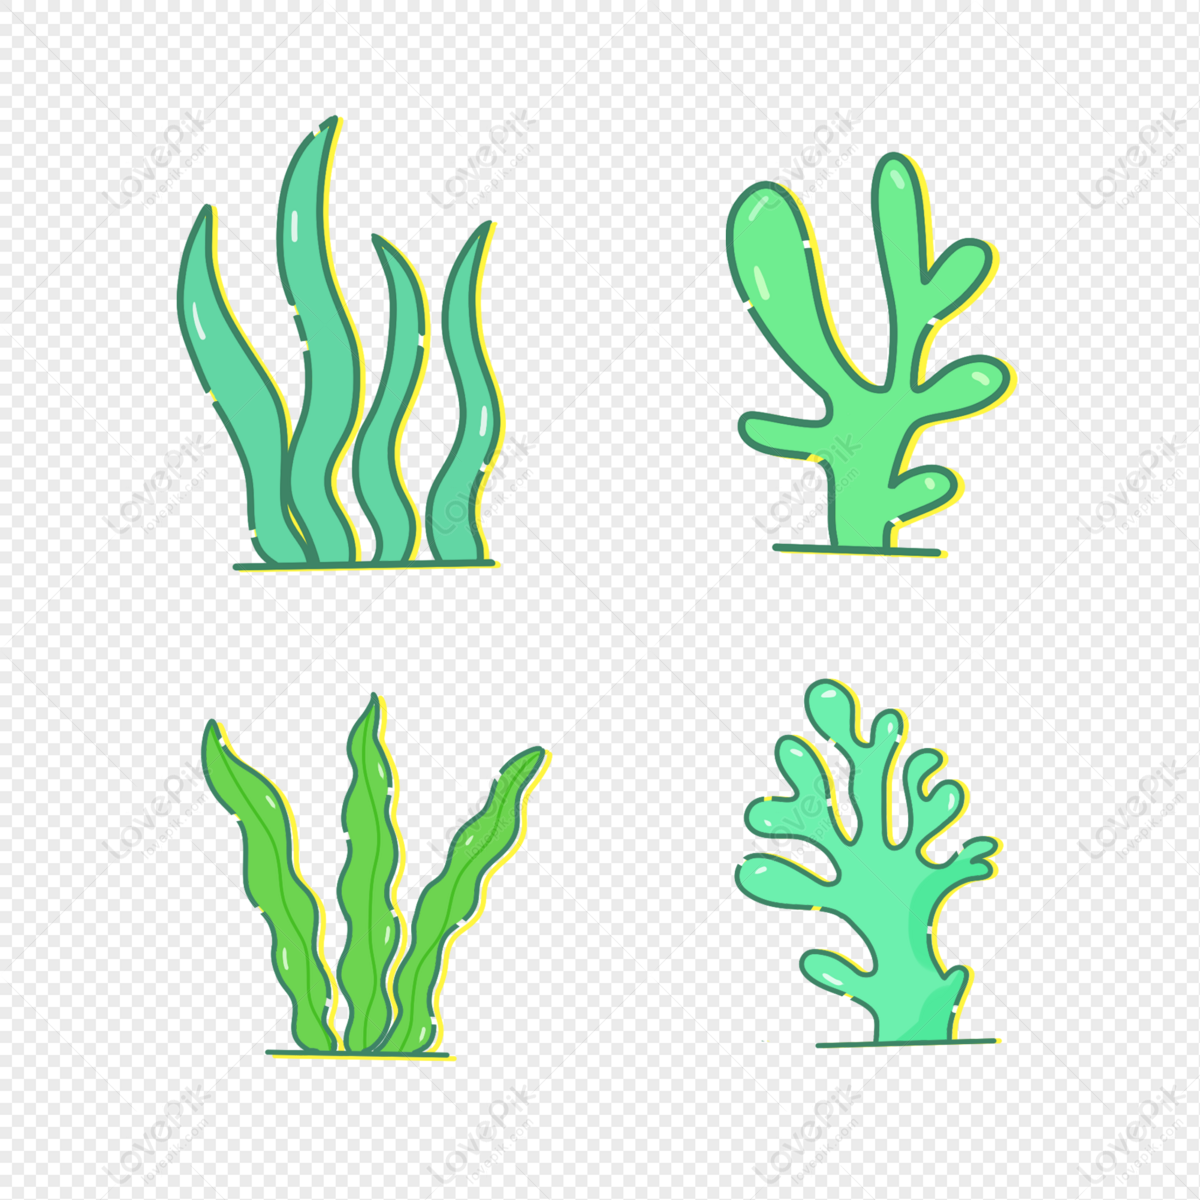 Seaweed Green Clipart: Sự kết hợp giữa màu xanh lá cây và đường nét đơn giản, clipart rong biển sẽ cho bạn những hình ảnh đẹp mắt và ấn tượng. Phù hợp với nhiều loại thiết kế, nó sẽ là một lựa chọn tuyệt vời để cải thiện hình ảnh và làm nổi bật bất kì dự án nào.